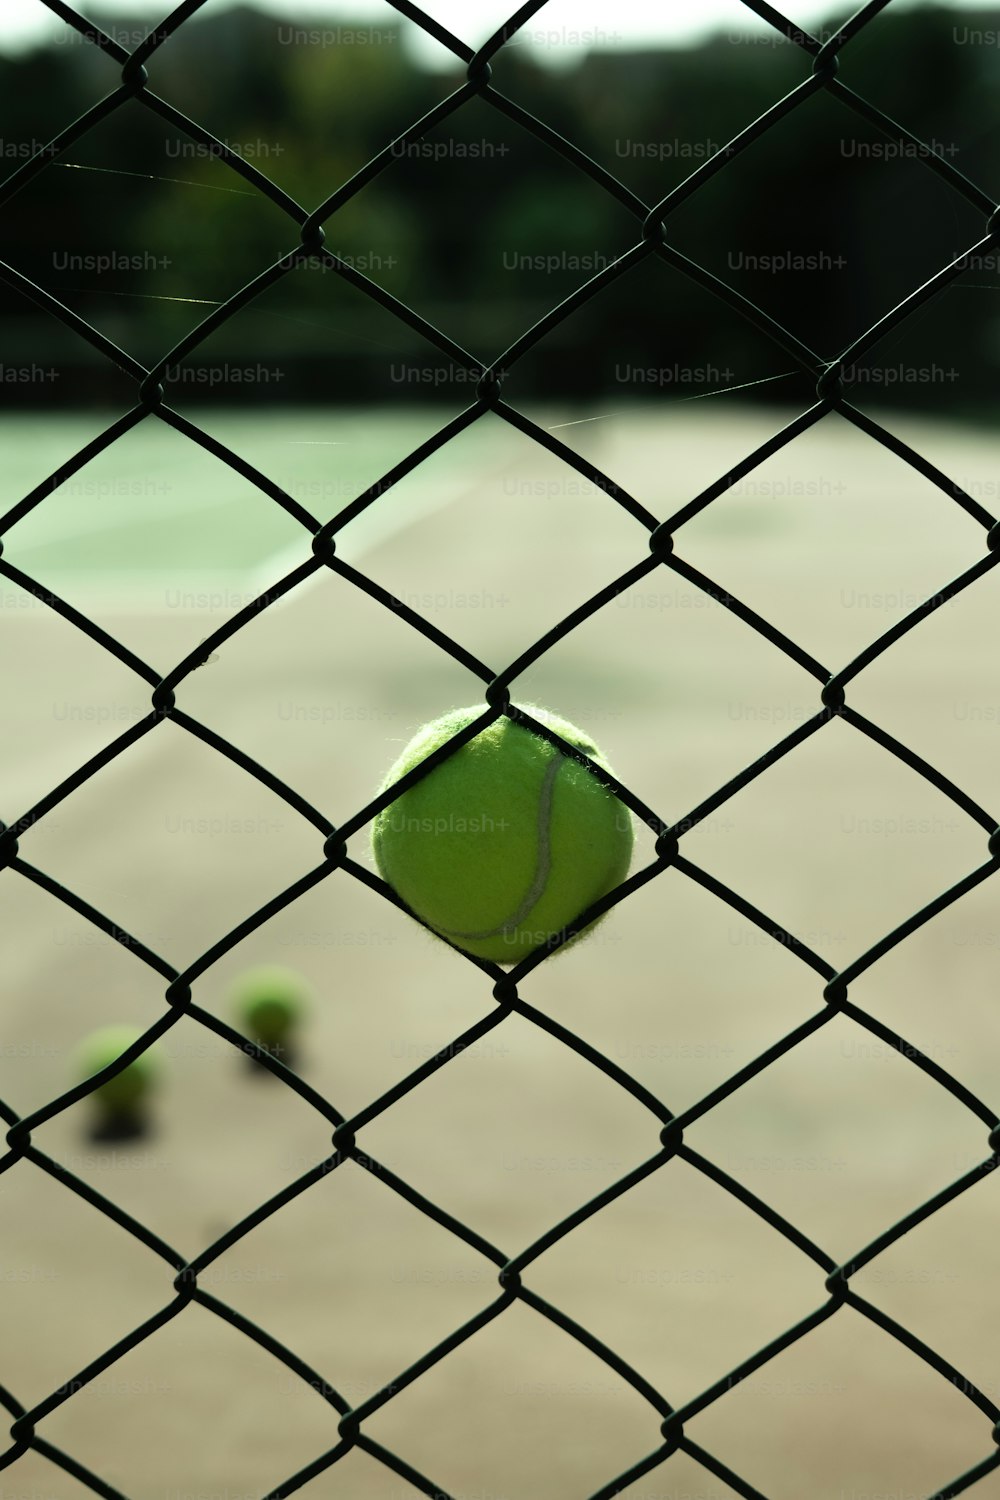 테니스 코트 위에 앉아 있는 테니스 공